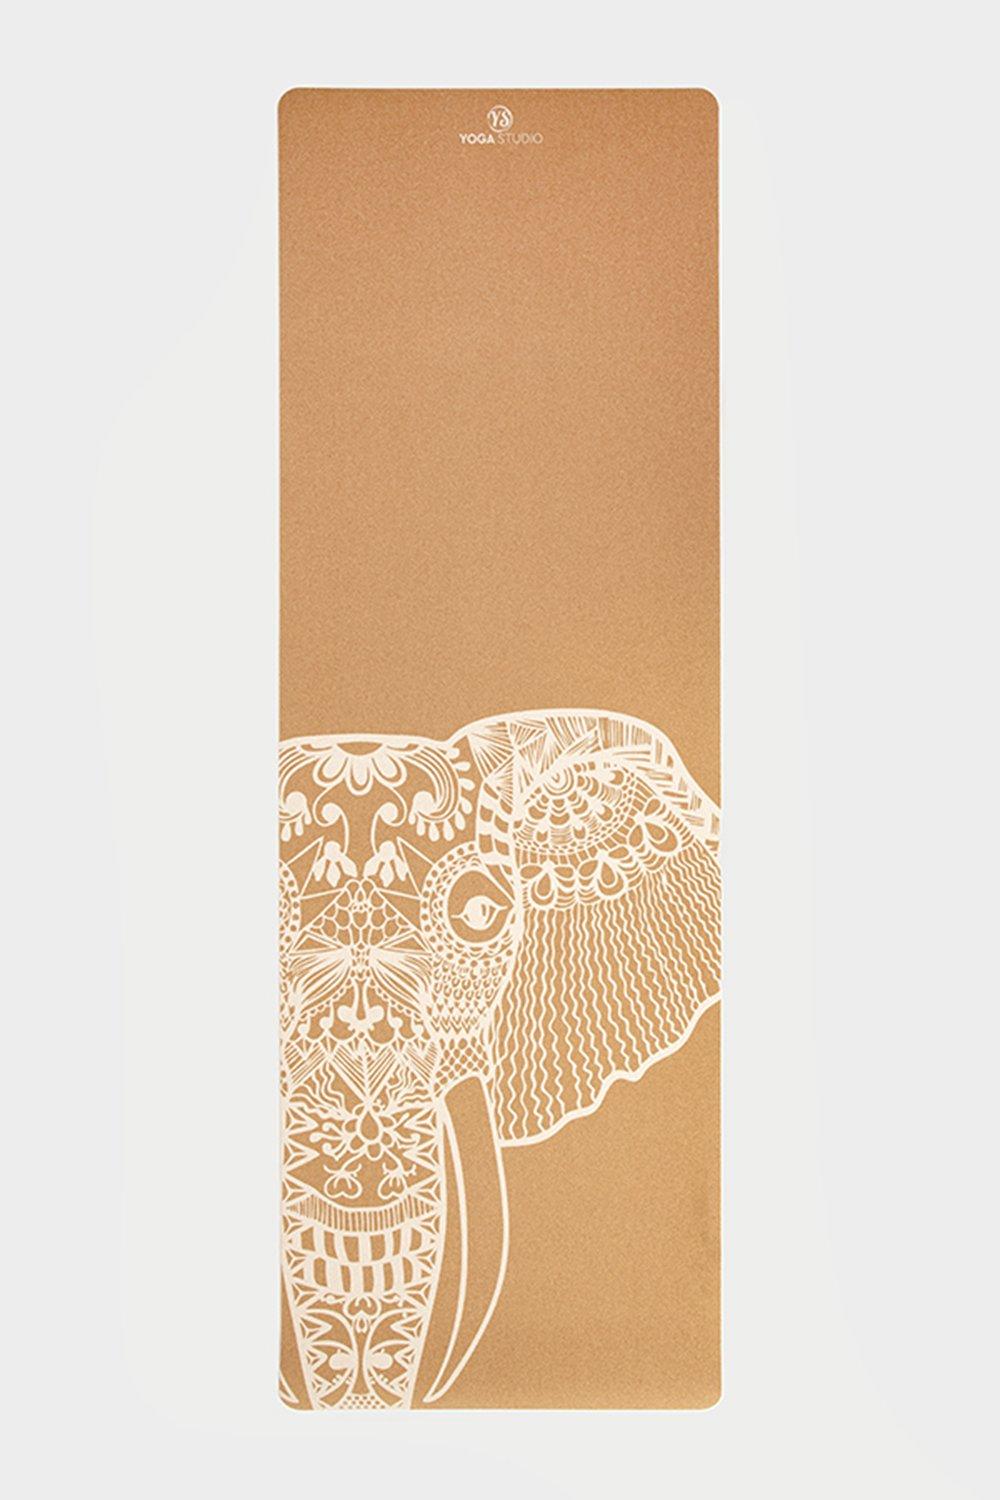 Коврик для йоги из пробки «Белый слон» толщиной 4 мм Yoga Studio, мультиколор стикеры пробковые птицы